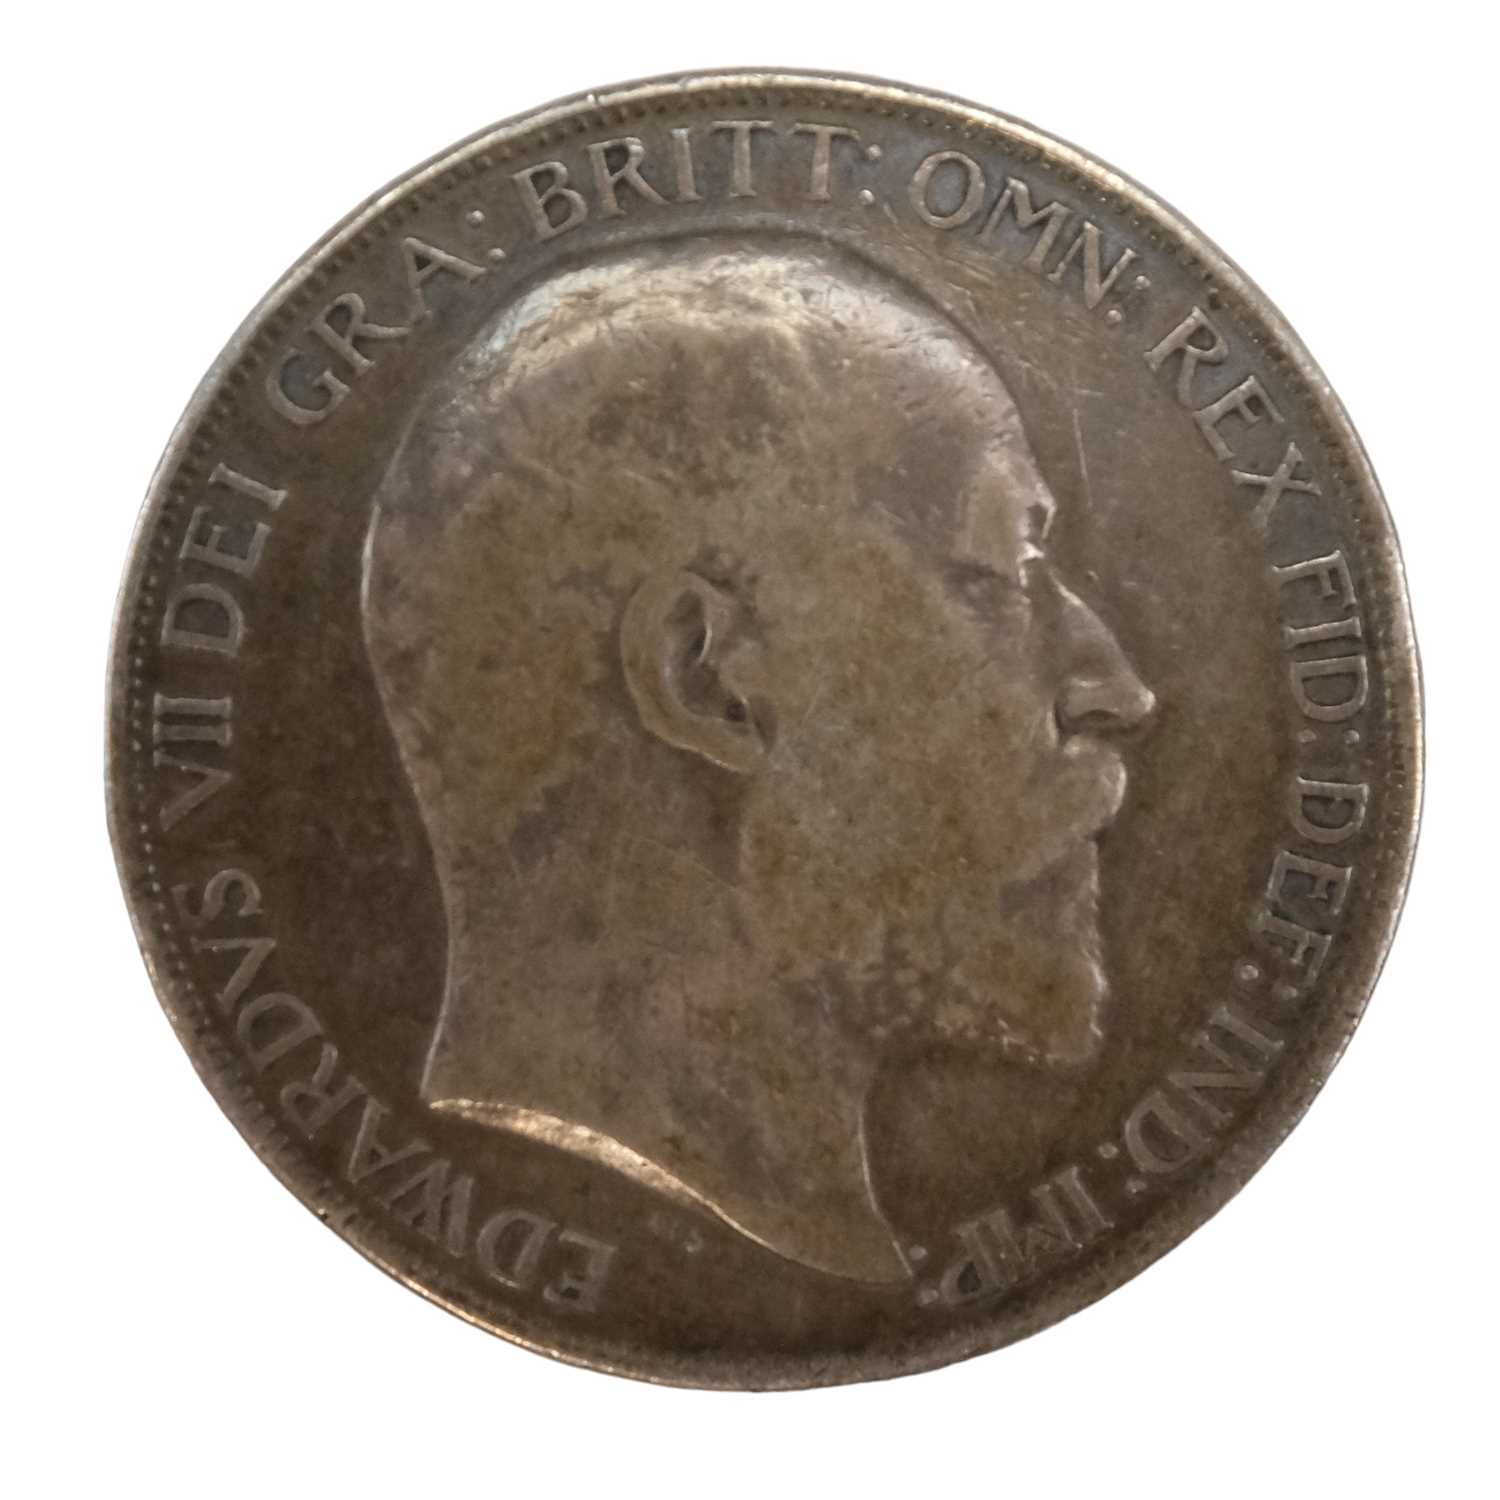 A 1902 silver crown coin